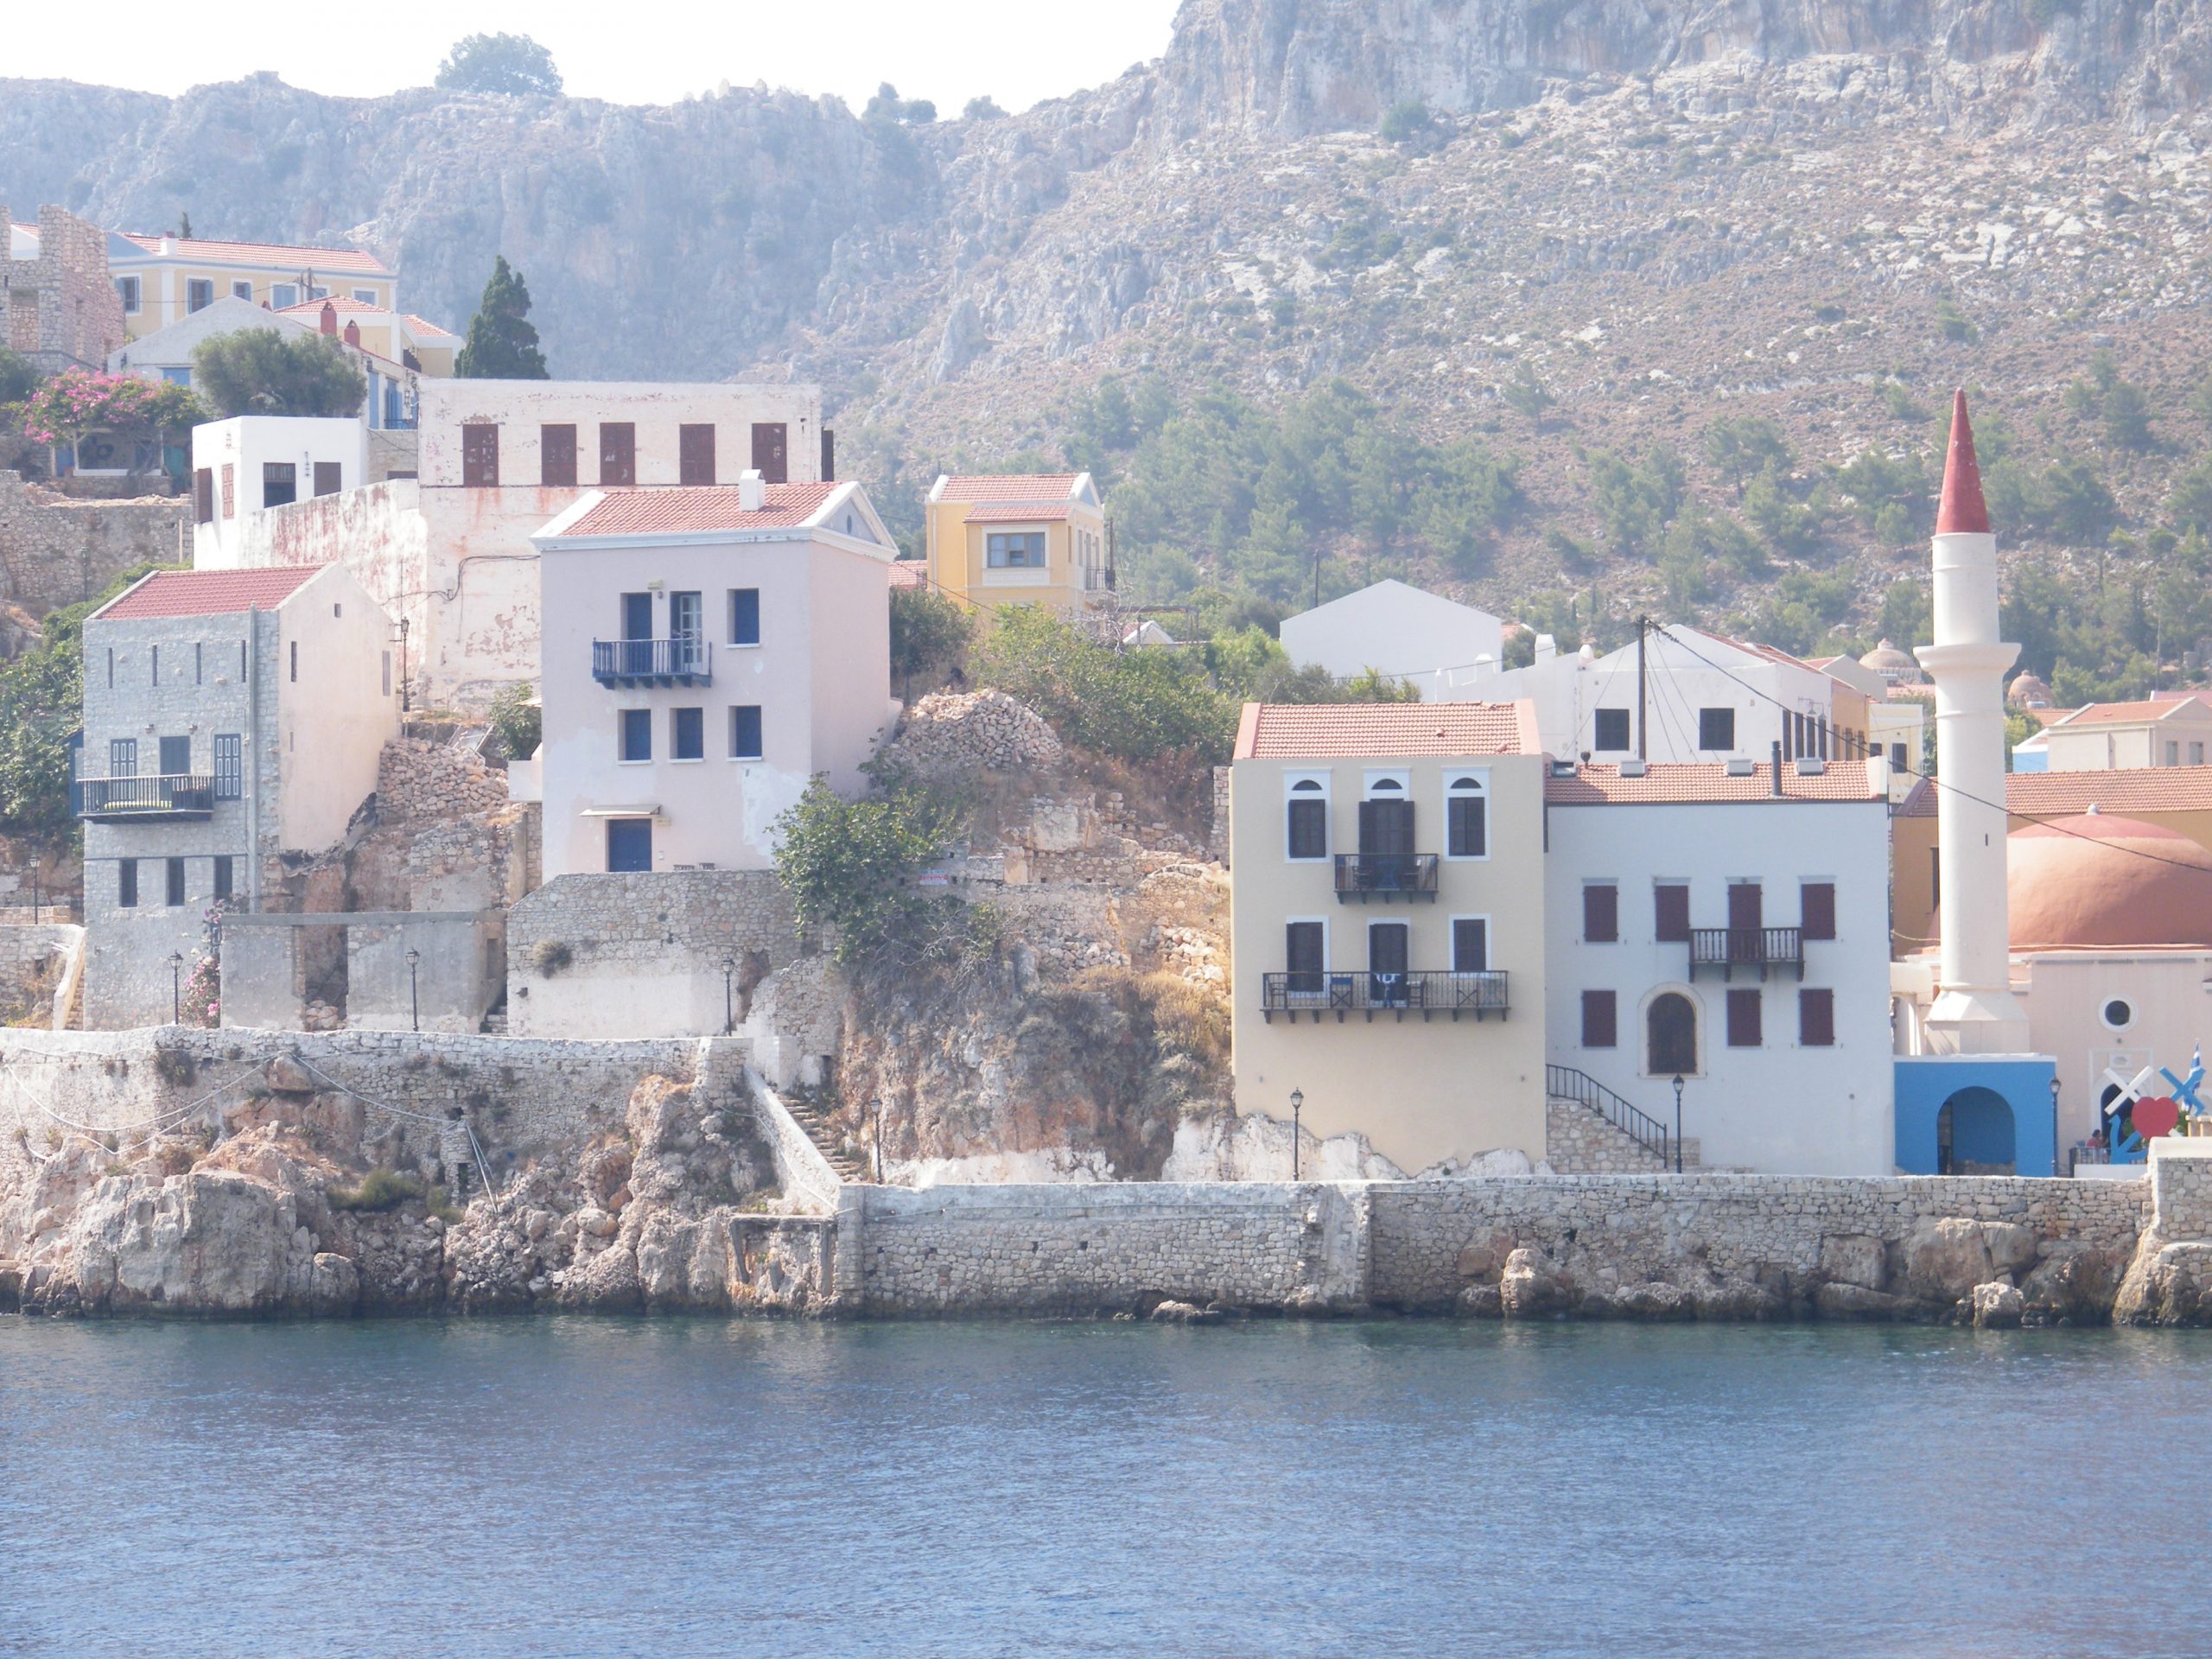 Vista de la ciudad griega Kastellorizo a la que se accede en apenas una hora en ferry desde Kas, localidad situada en el Egeo turco // J.M. Grecia